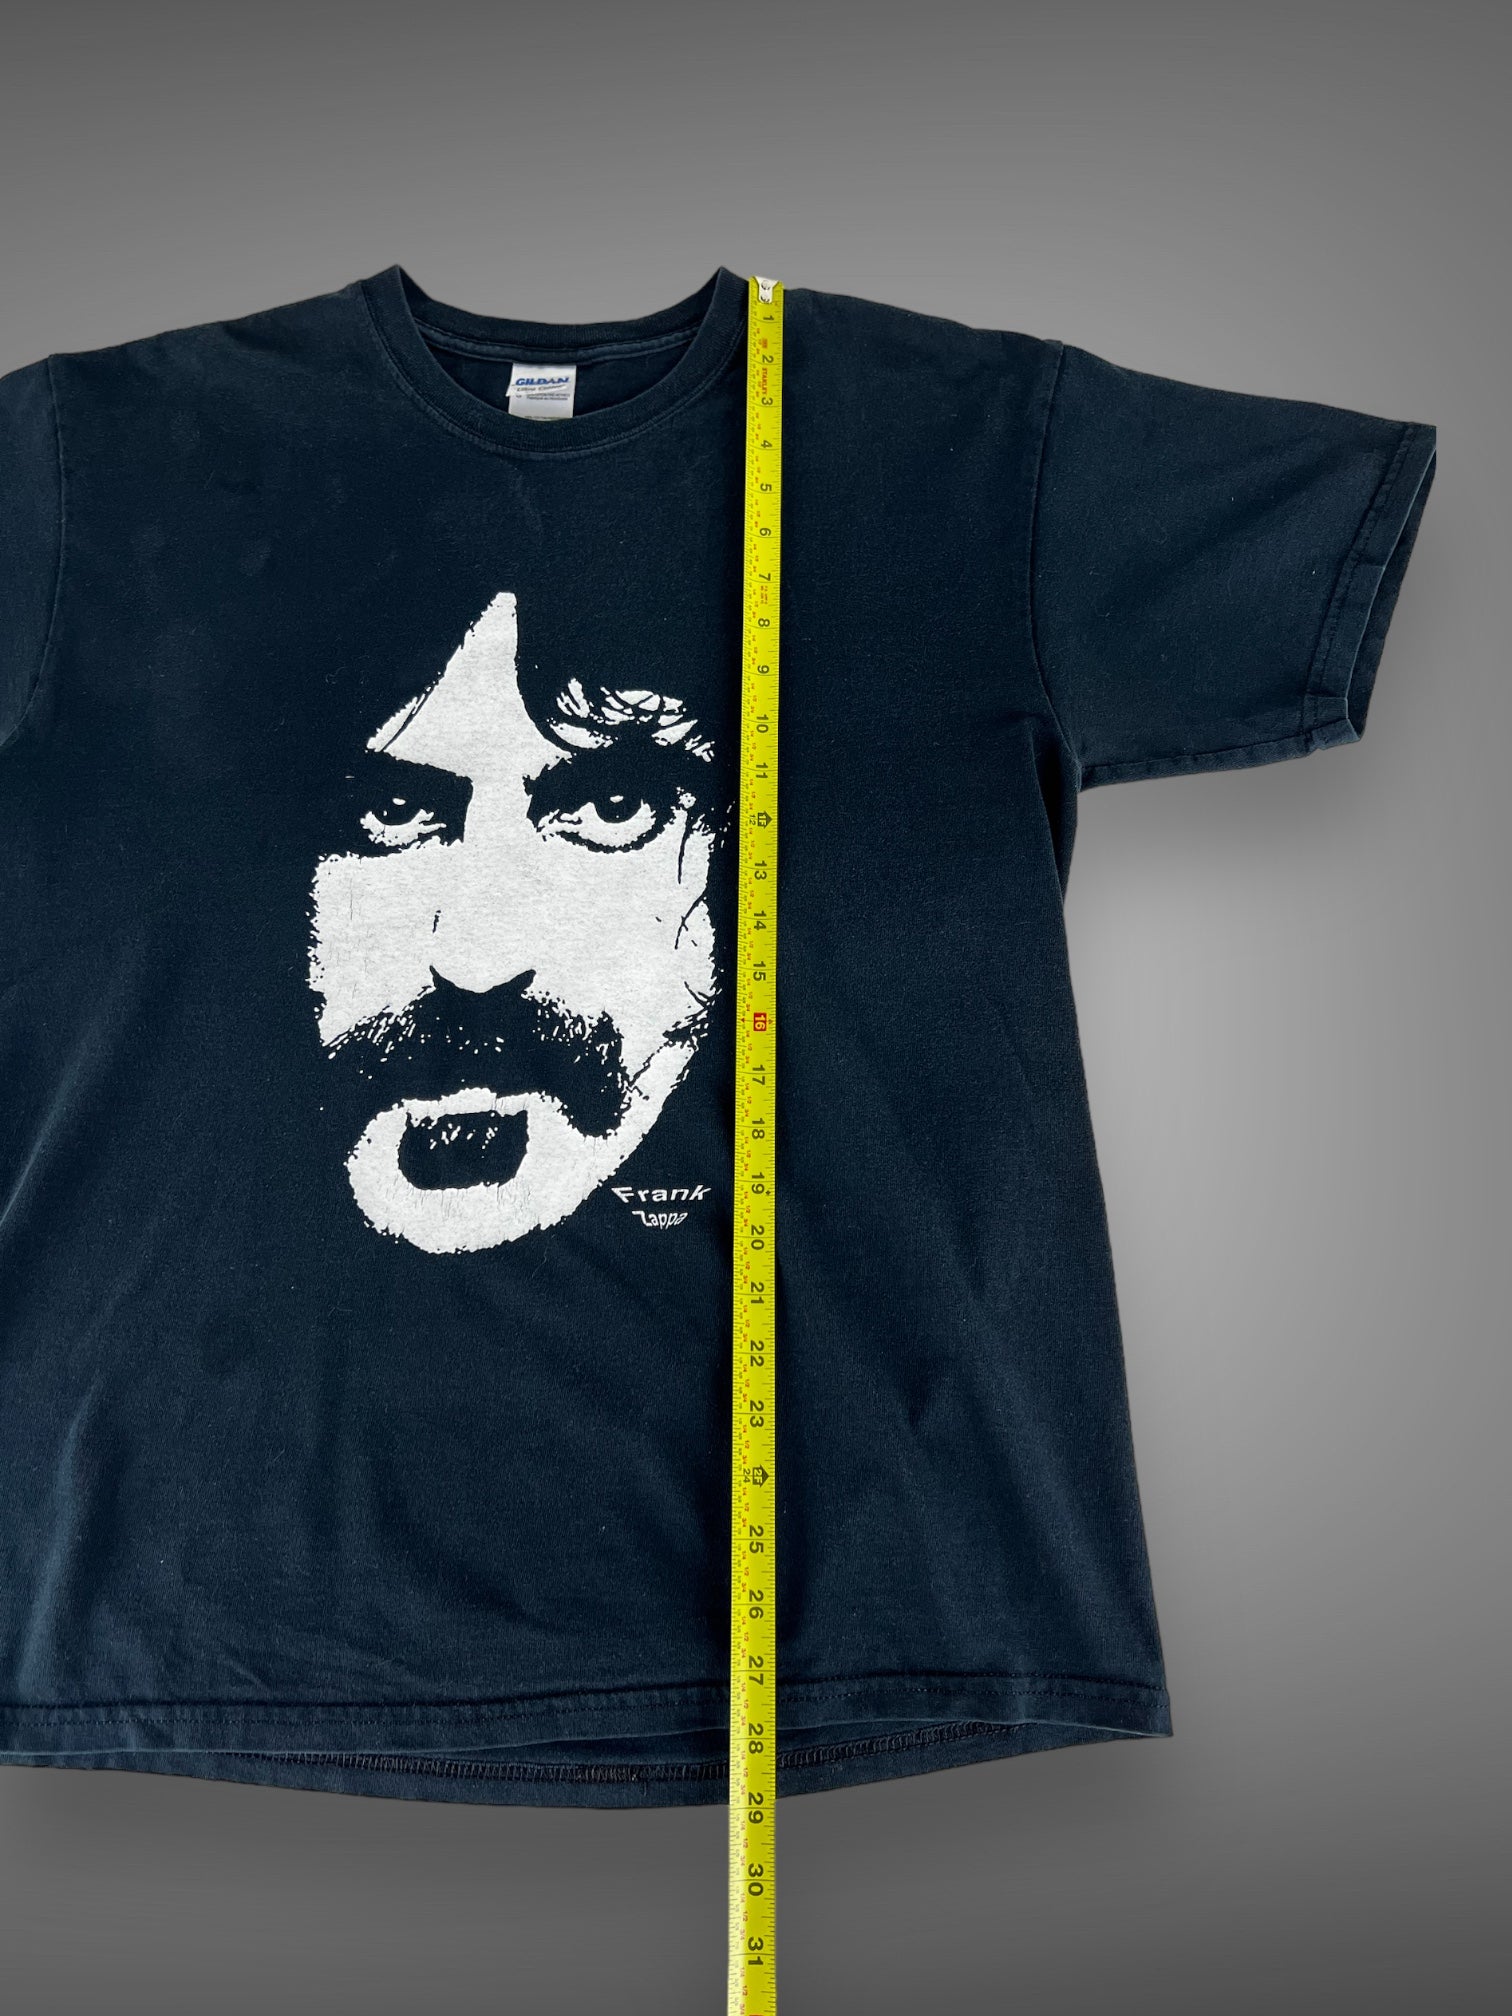 00s Frank Zappa t shirt L